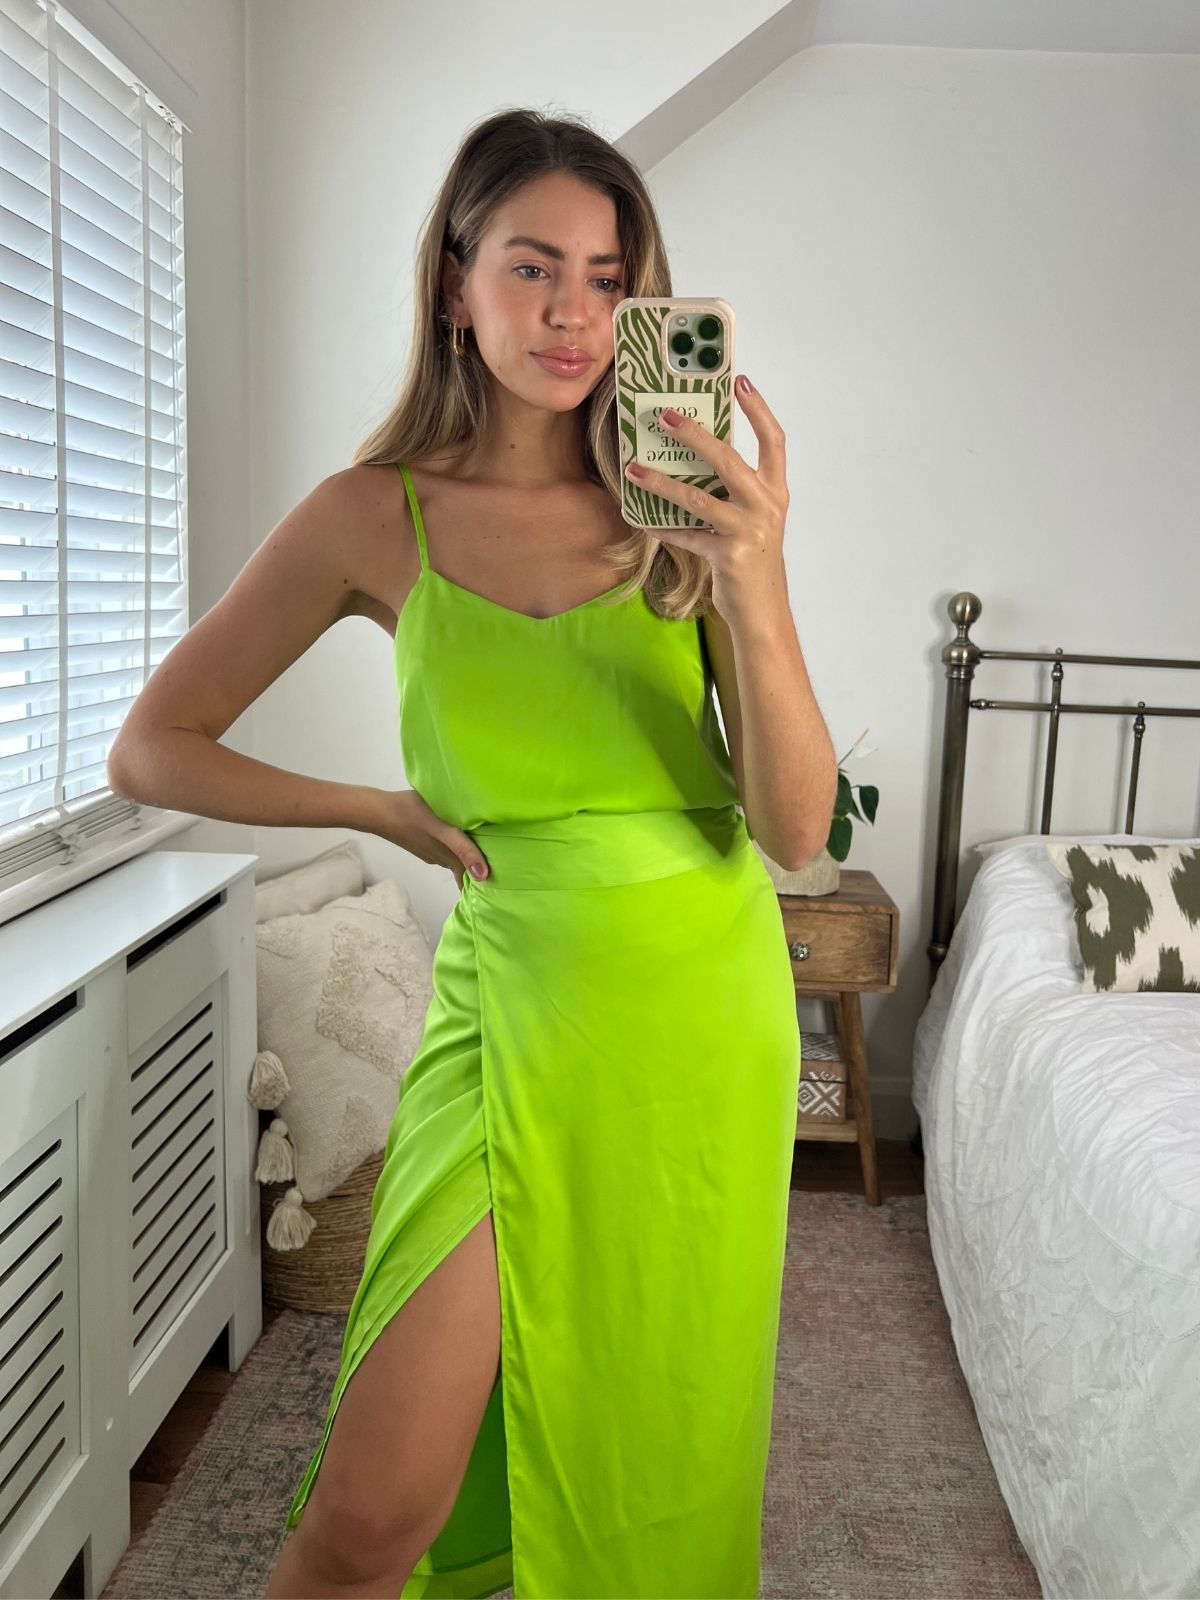 Lime Green Satin Skirt